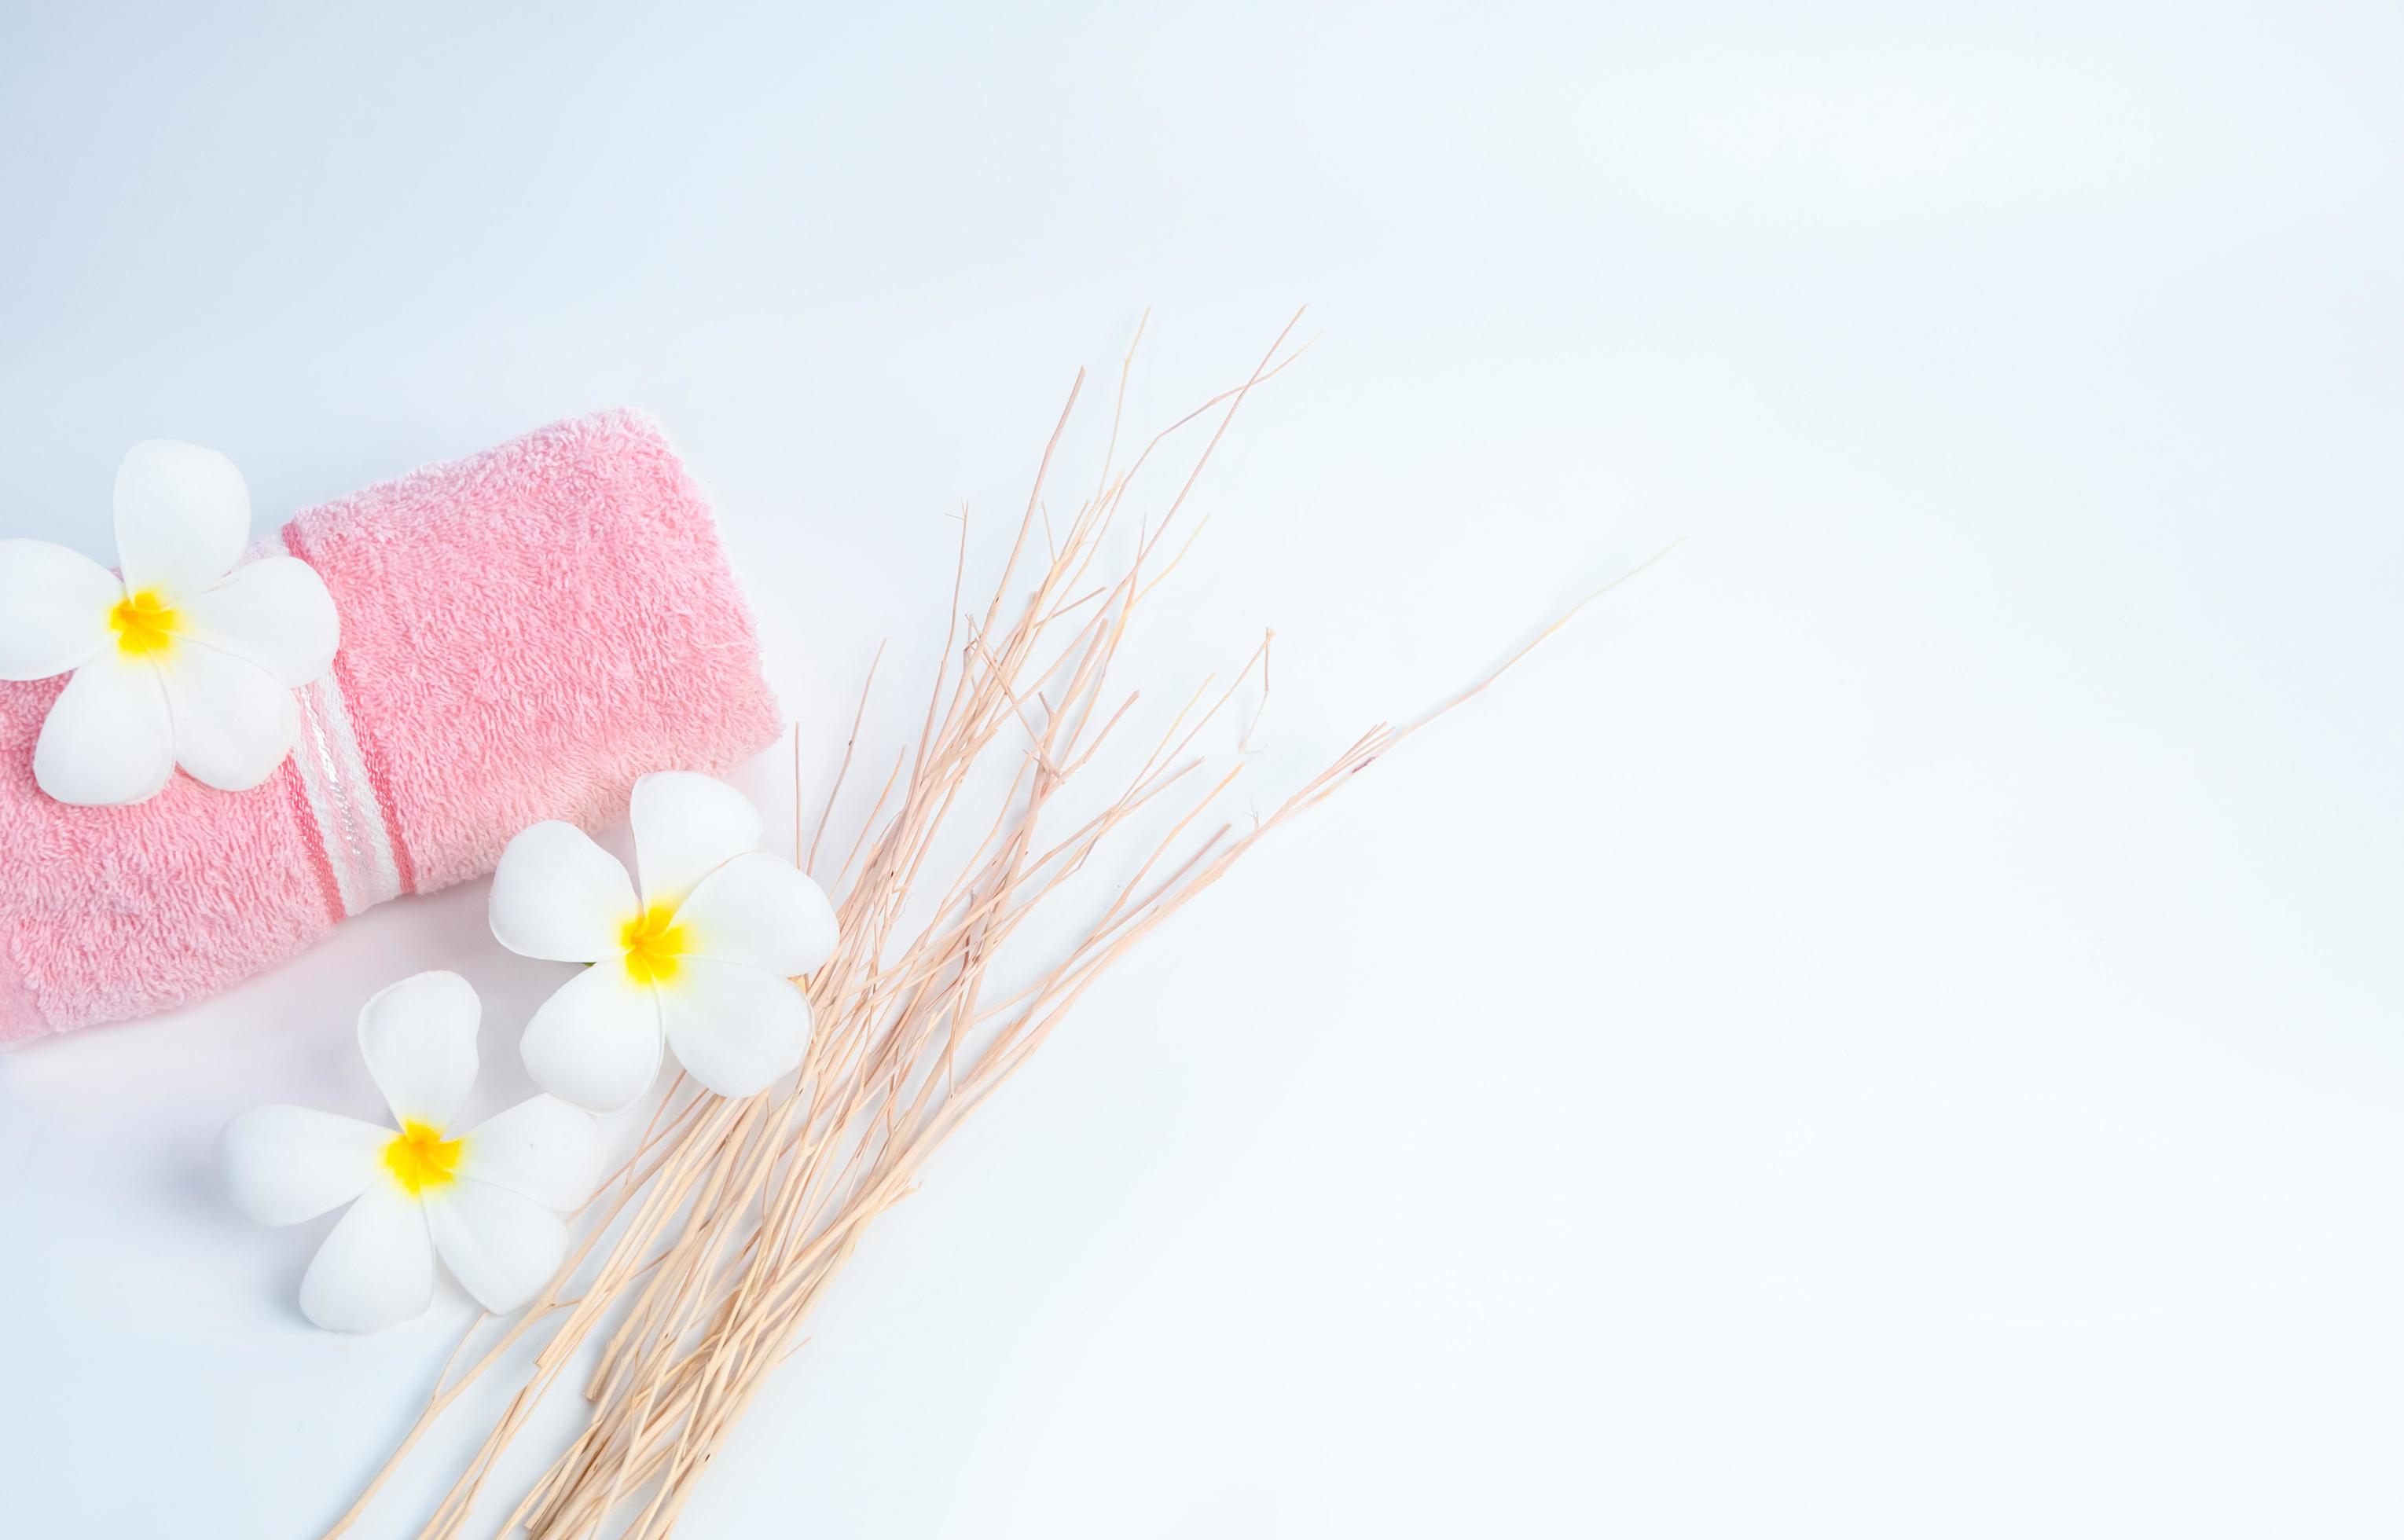 Khăn tắm Spa và hoa Frangipani là hai yếu tố quan trọng giúp tạo nên không khí thư giãn trong Spa. Hãy cùng xem hình ảnh để tận hưởng không khí thanh thản này. 